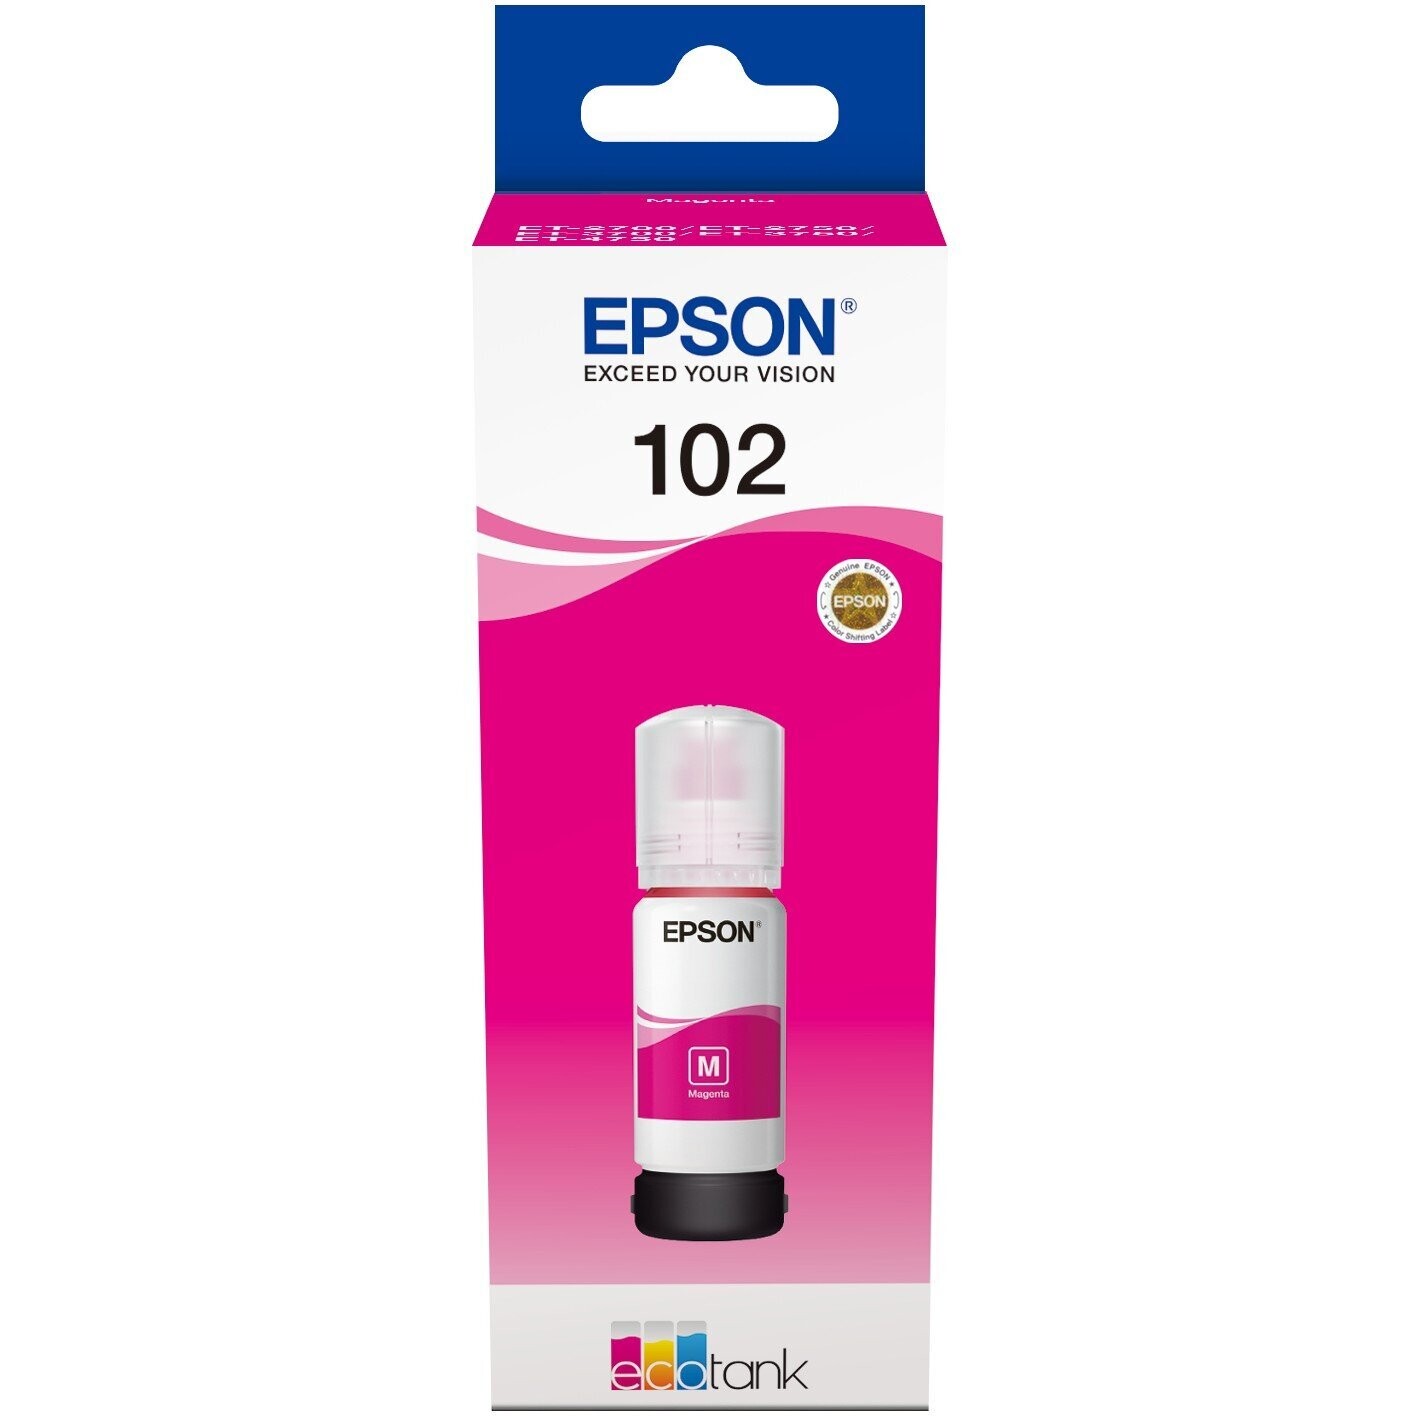 Epson 102 Tintenflasche für EcoTank Magenta